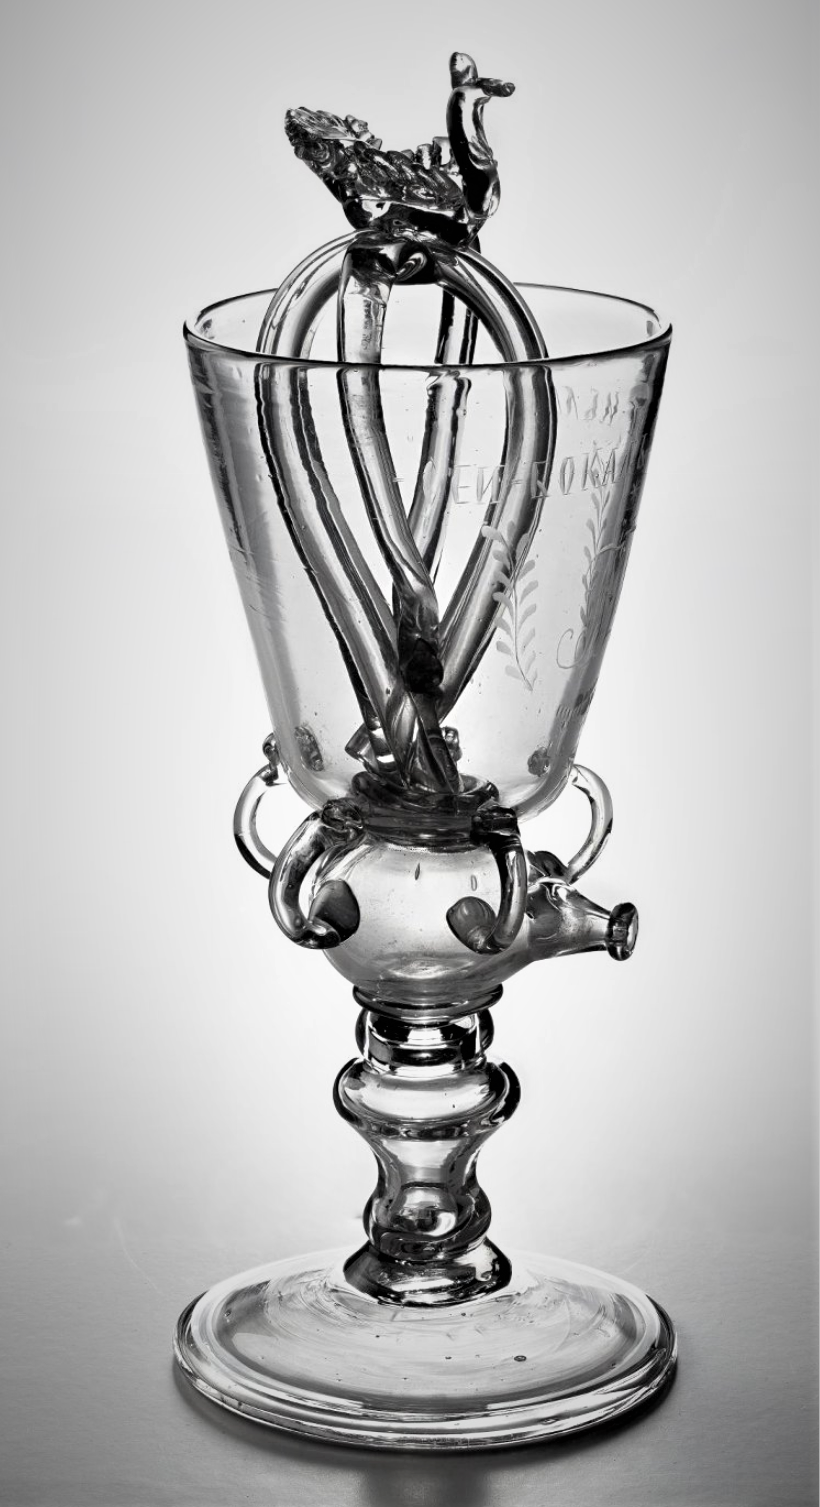 Кубок-шутиха. Бесцветное стекло, свободное выдувание, гравировка. Измайловский завод, конец XVII - начало XVIII века